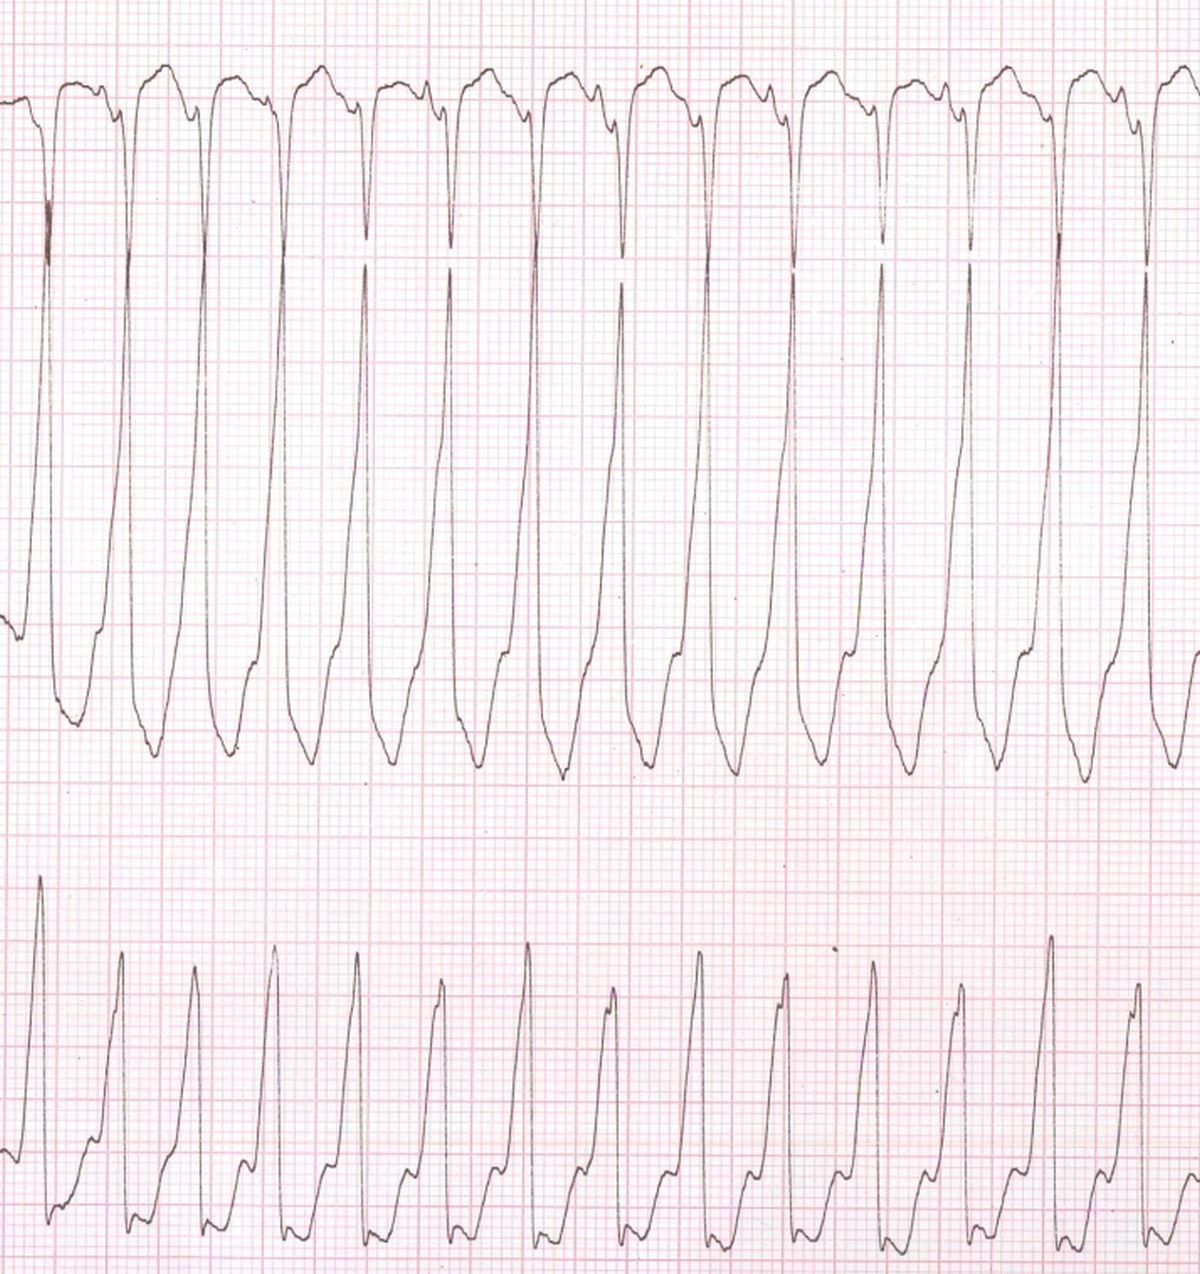 Ventricular Tachycardia ECG